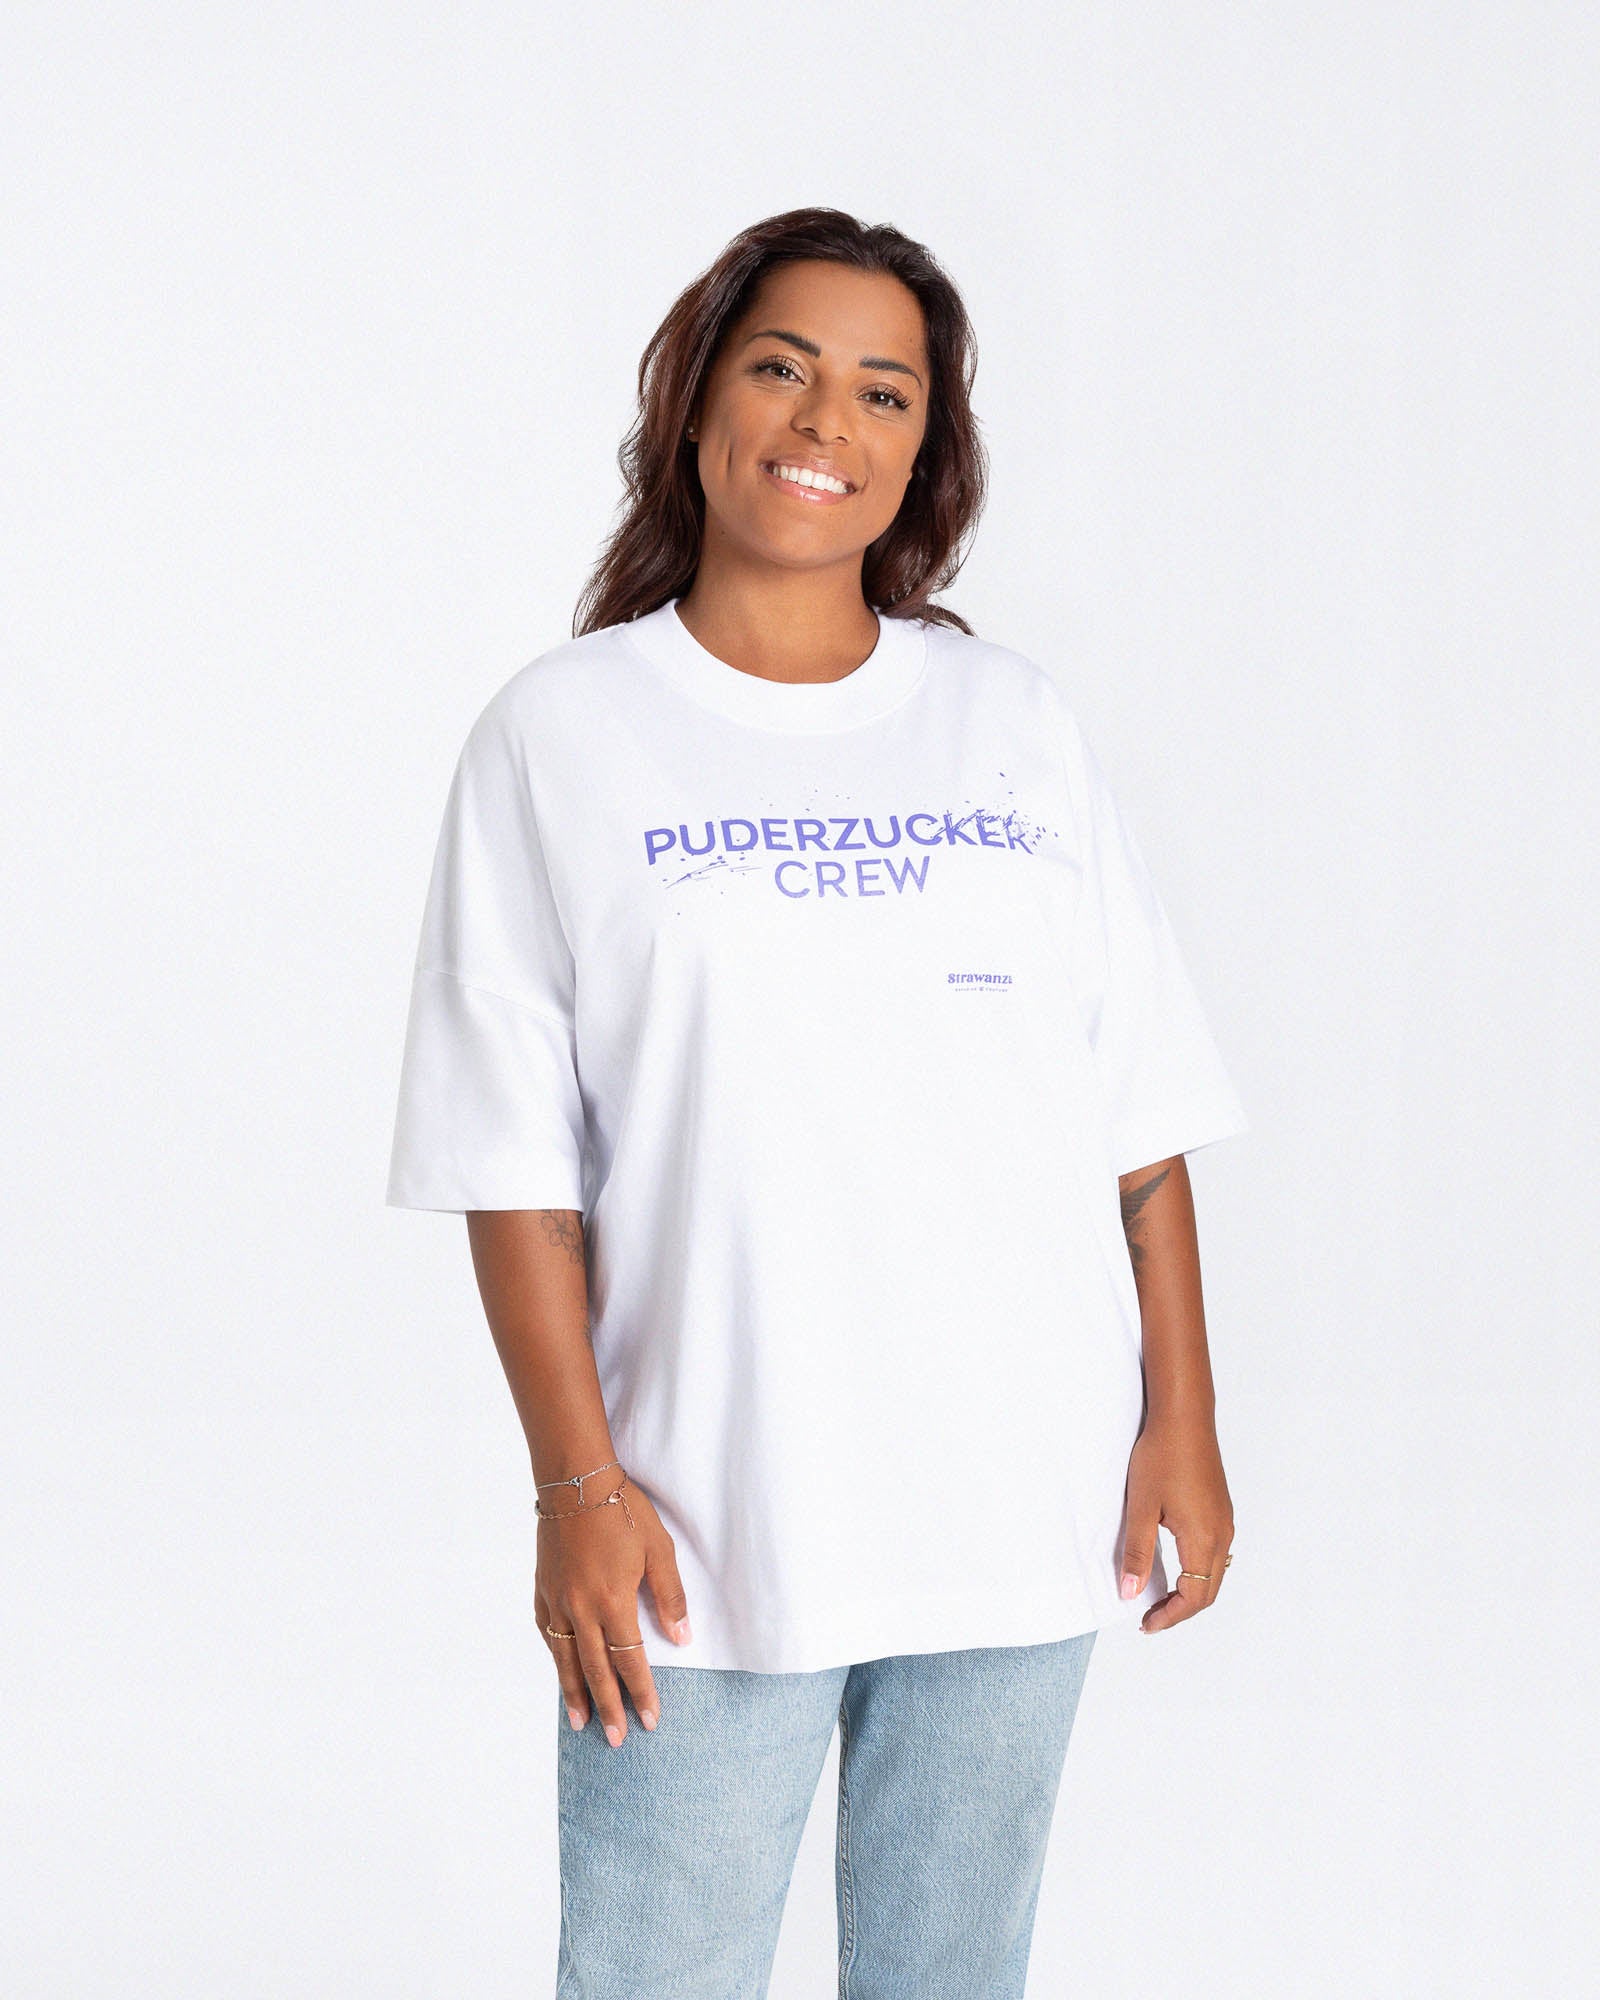 Ein weibliches Model trägt ein weißes T-Shirt mit einem Motiv auf der Vorderseite welches aus einem lilanen Schriftzug besteht welcher 